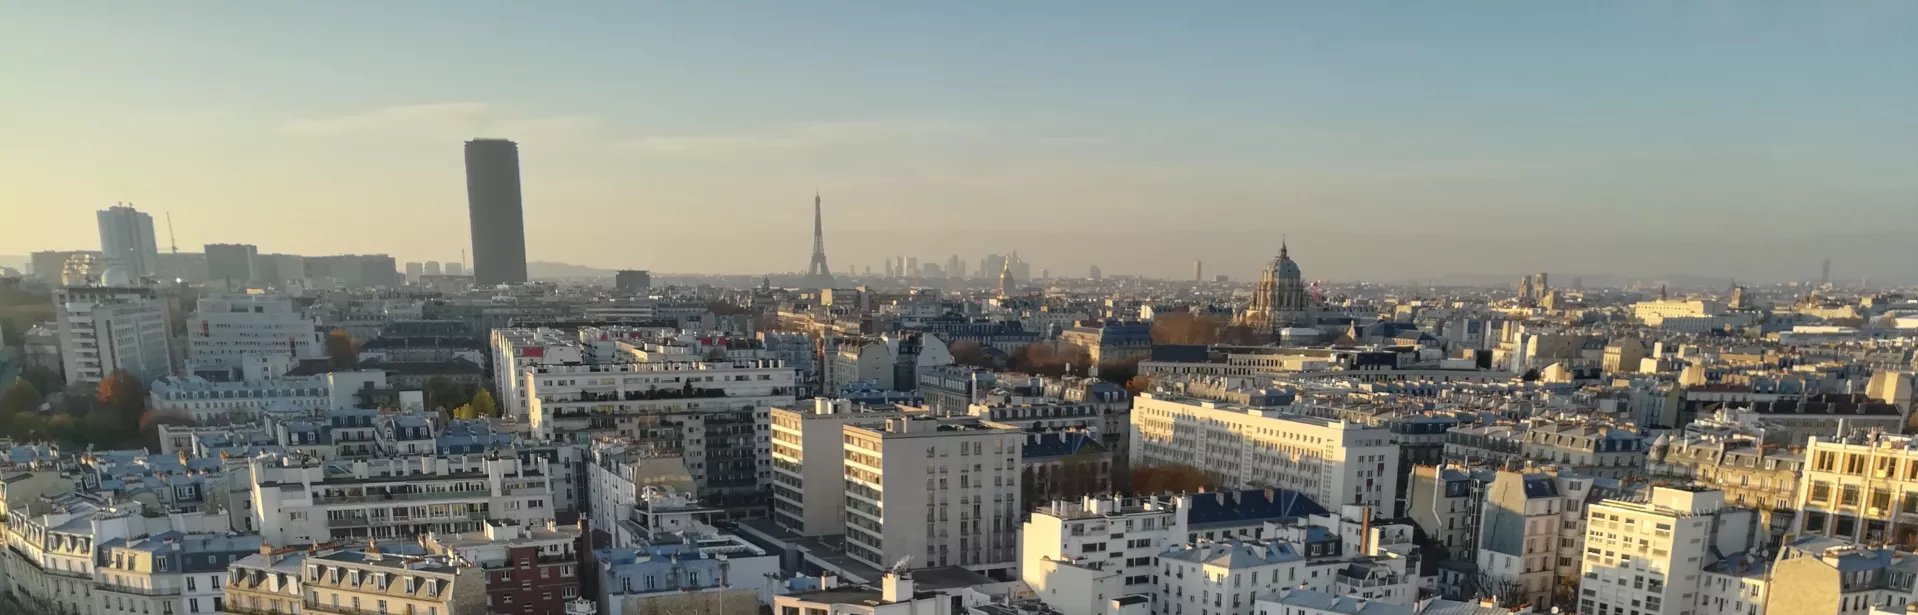 Sale Apartment - Paris 13th (Paris 13ème)